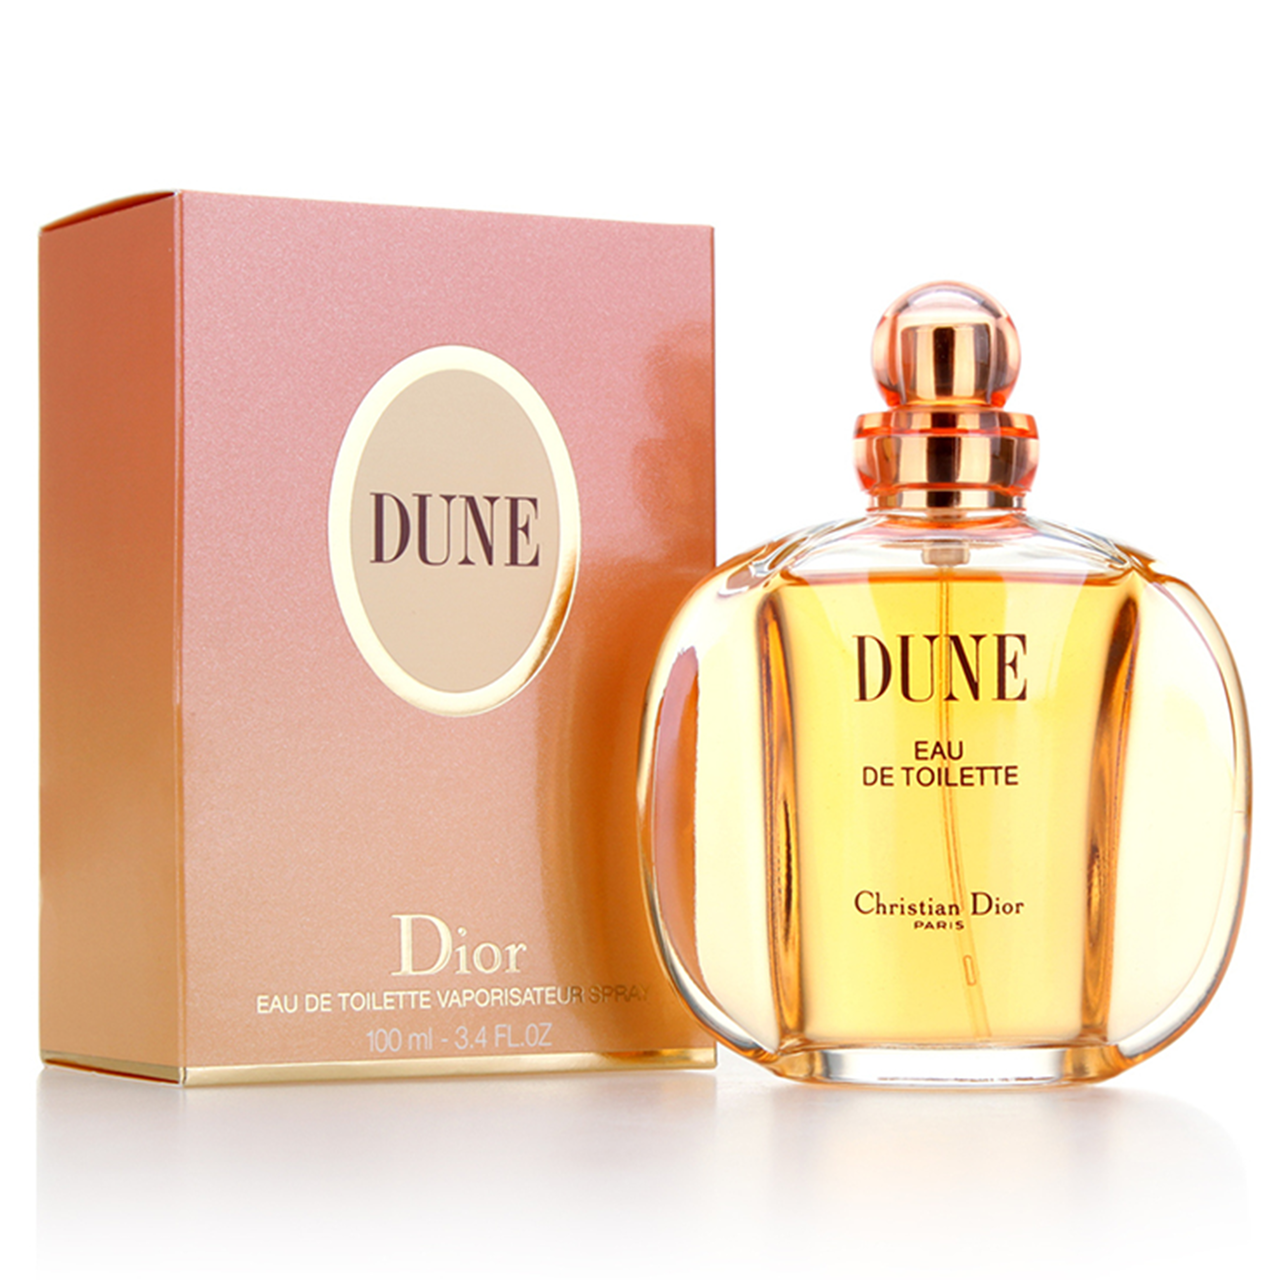 Buy Christian Dior - Dune 30 ml. EDT